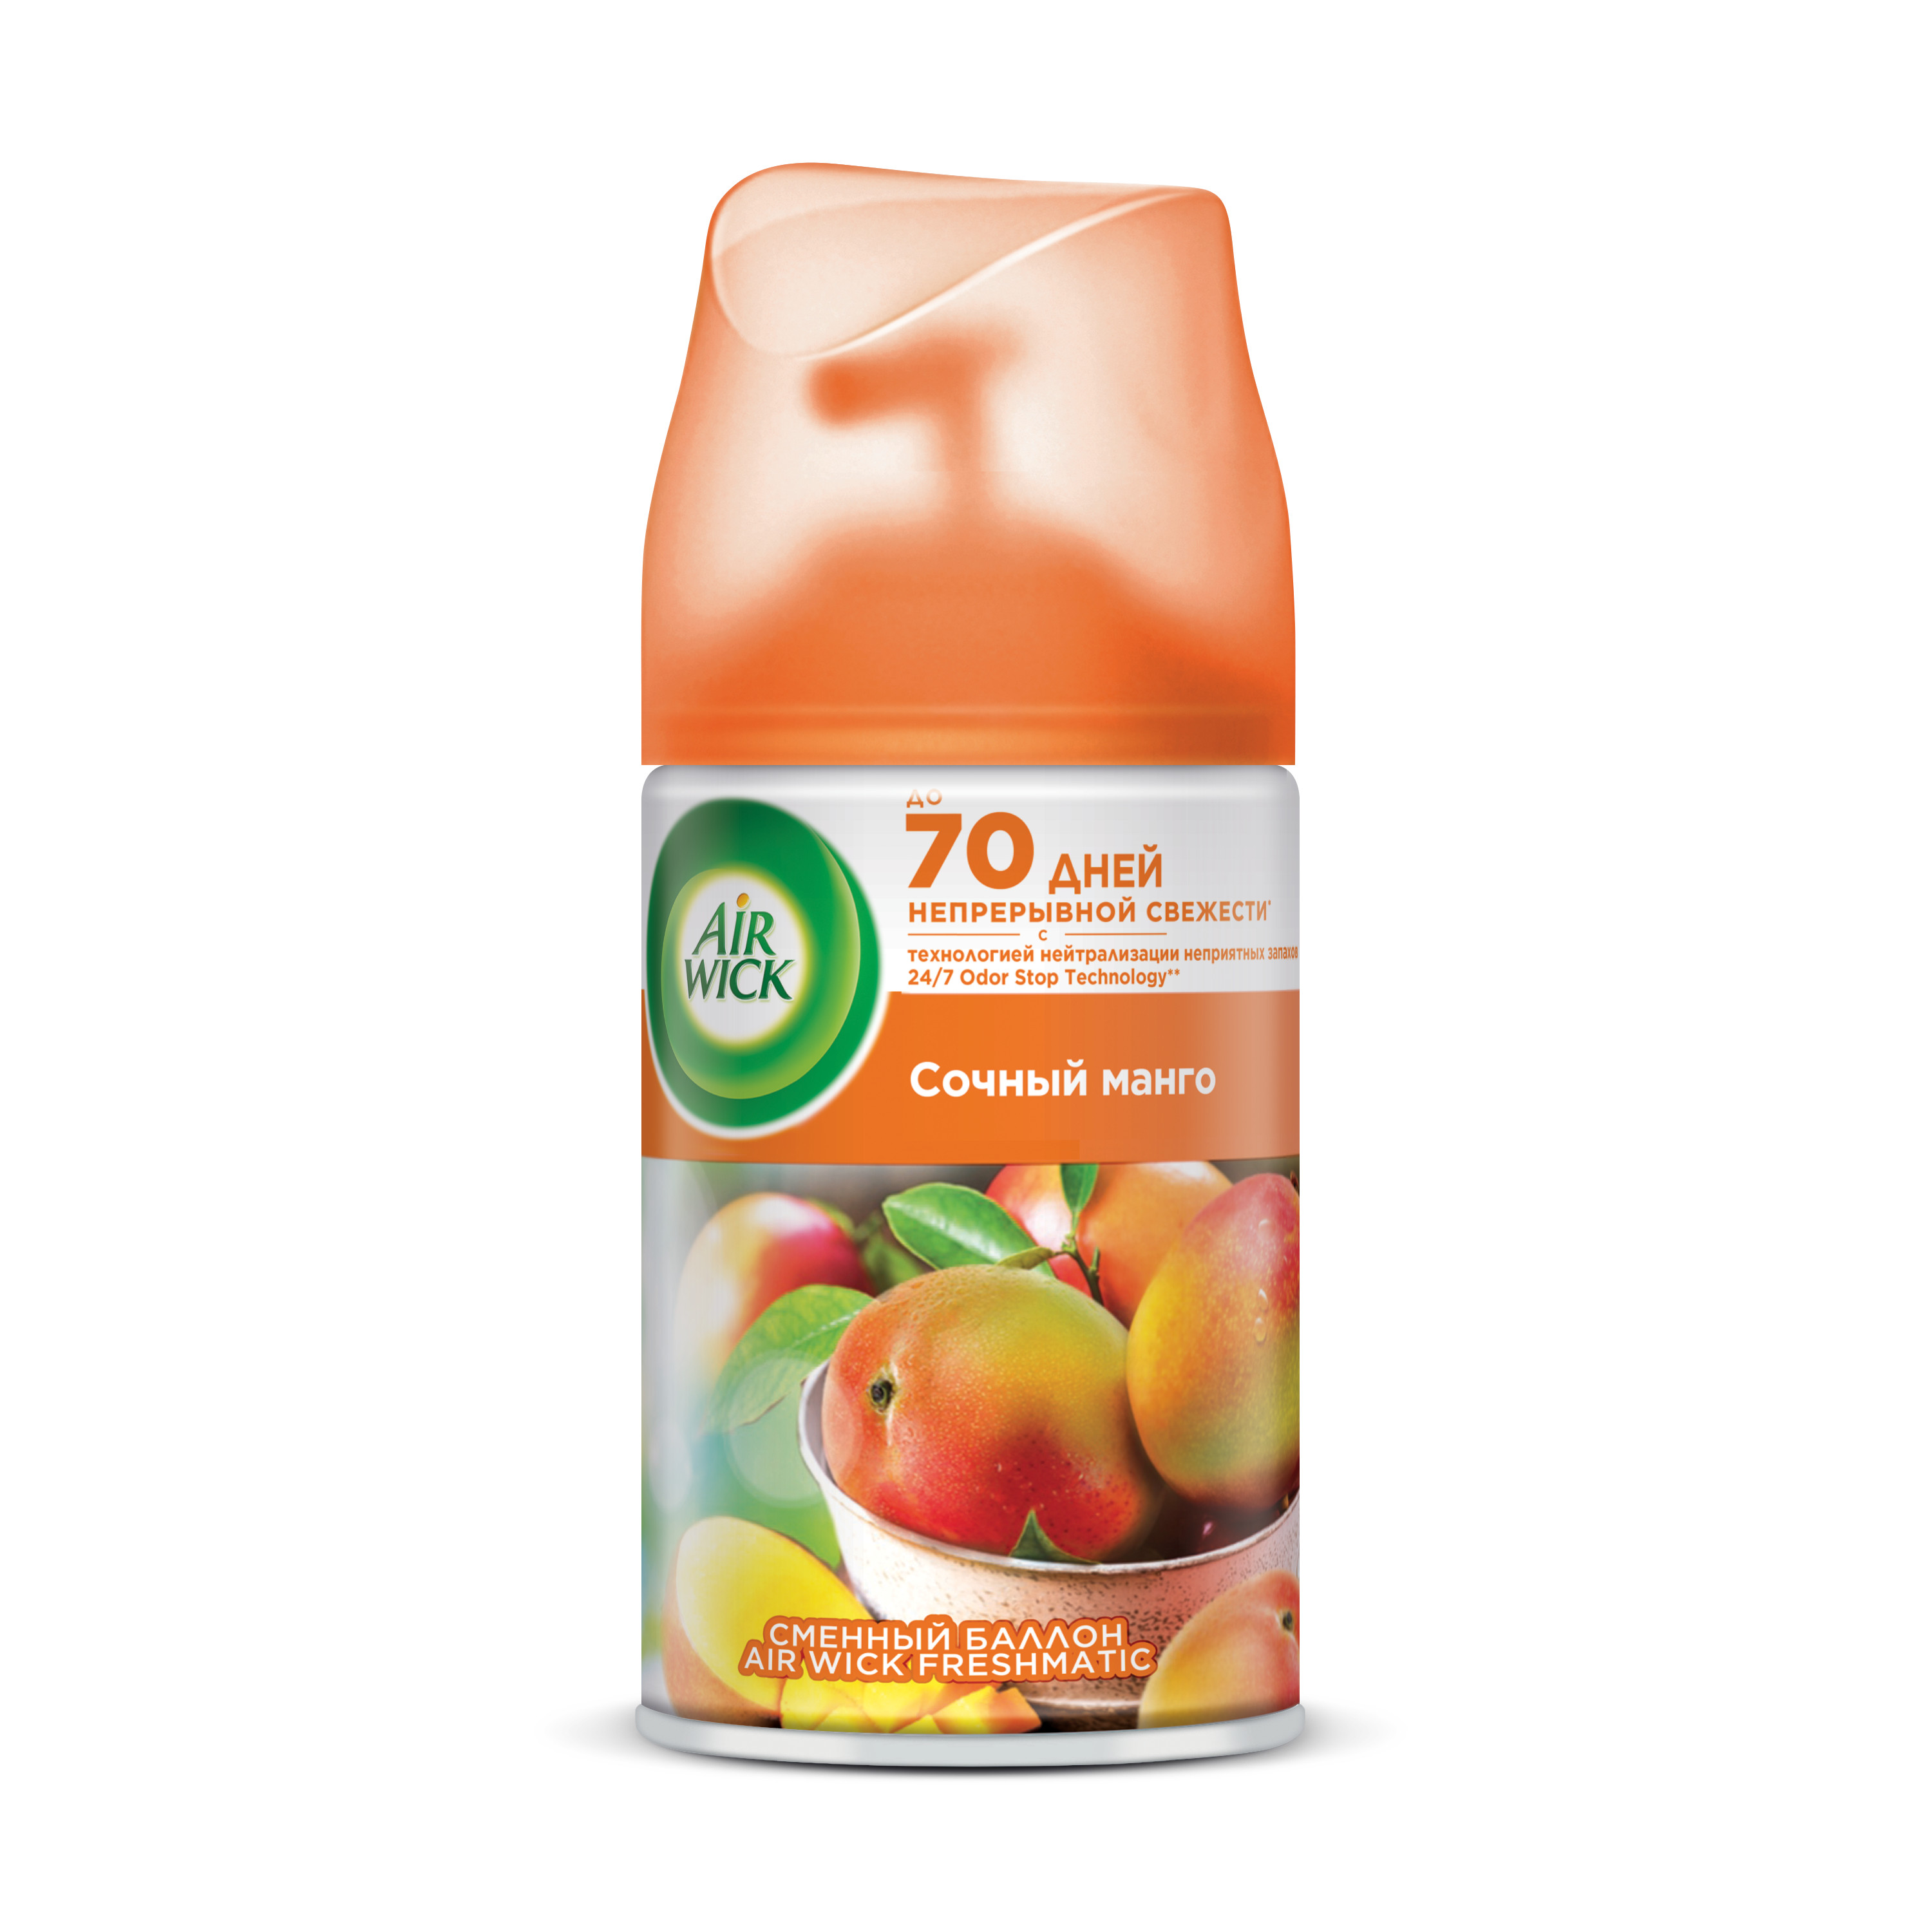 Сменный баллон для освежителя воздуха Air Wick Freshmatic Сочный манго 250 мл освежитель воздуха курок airwick pure апельсин и грейпфрут 250 мл